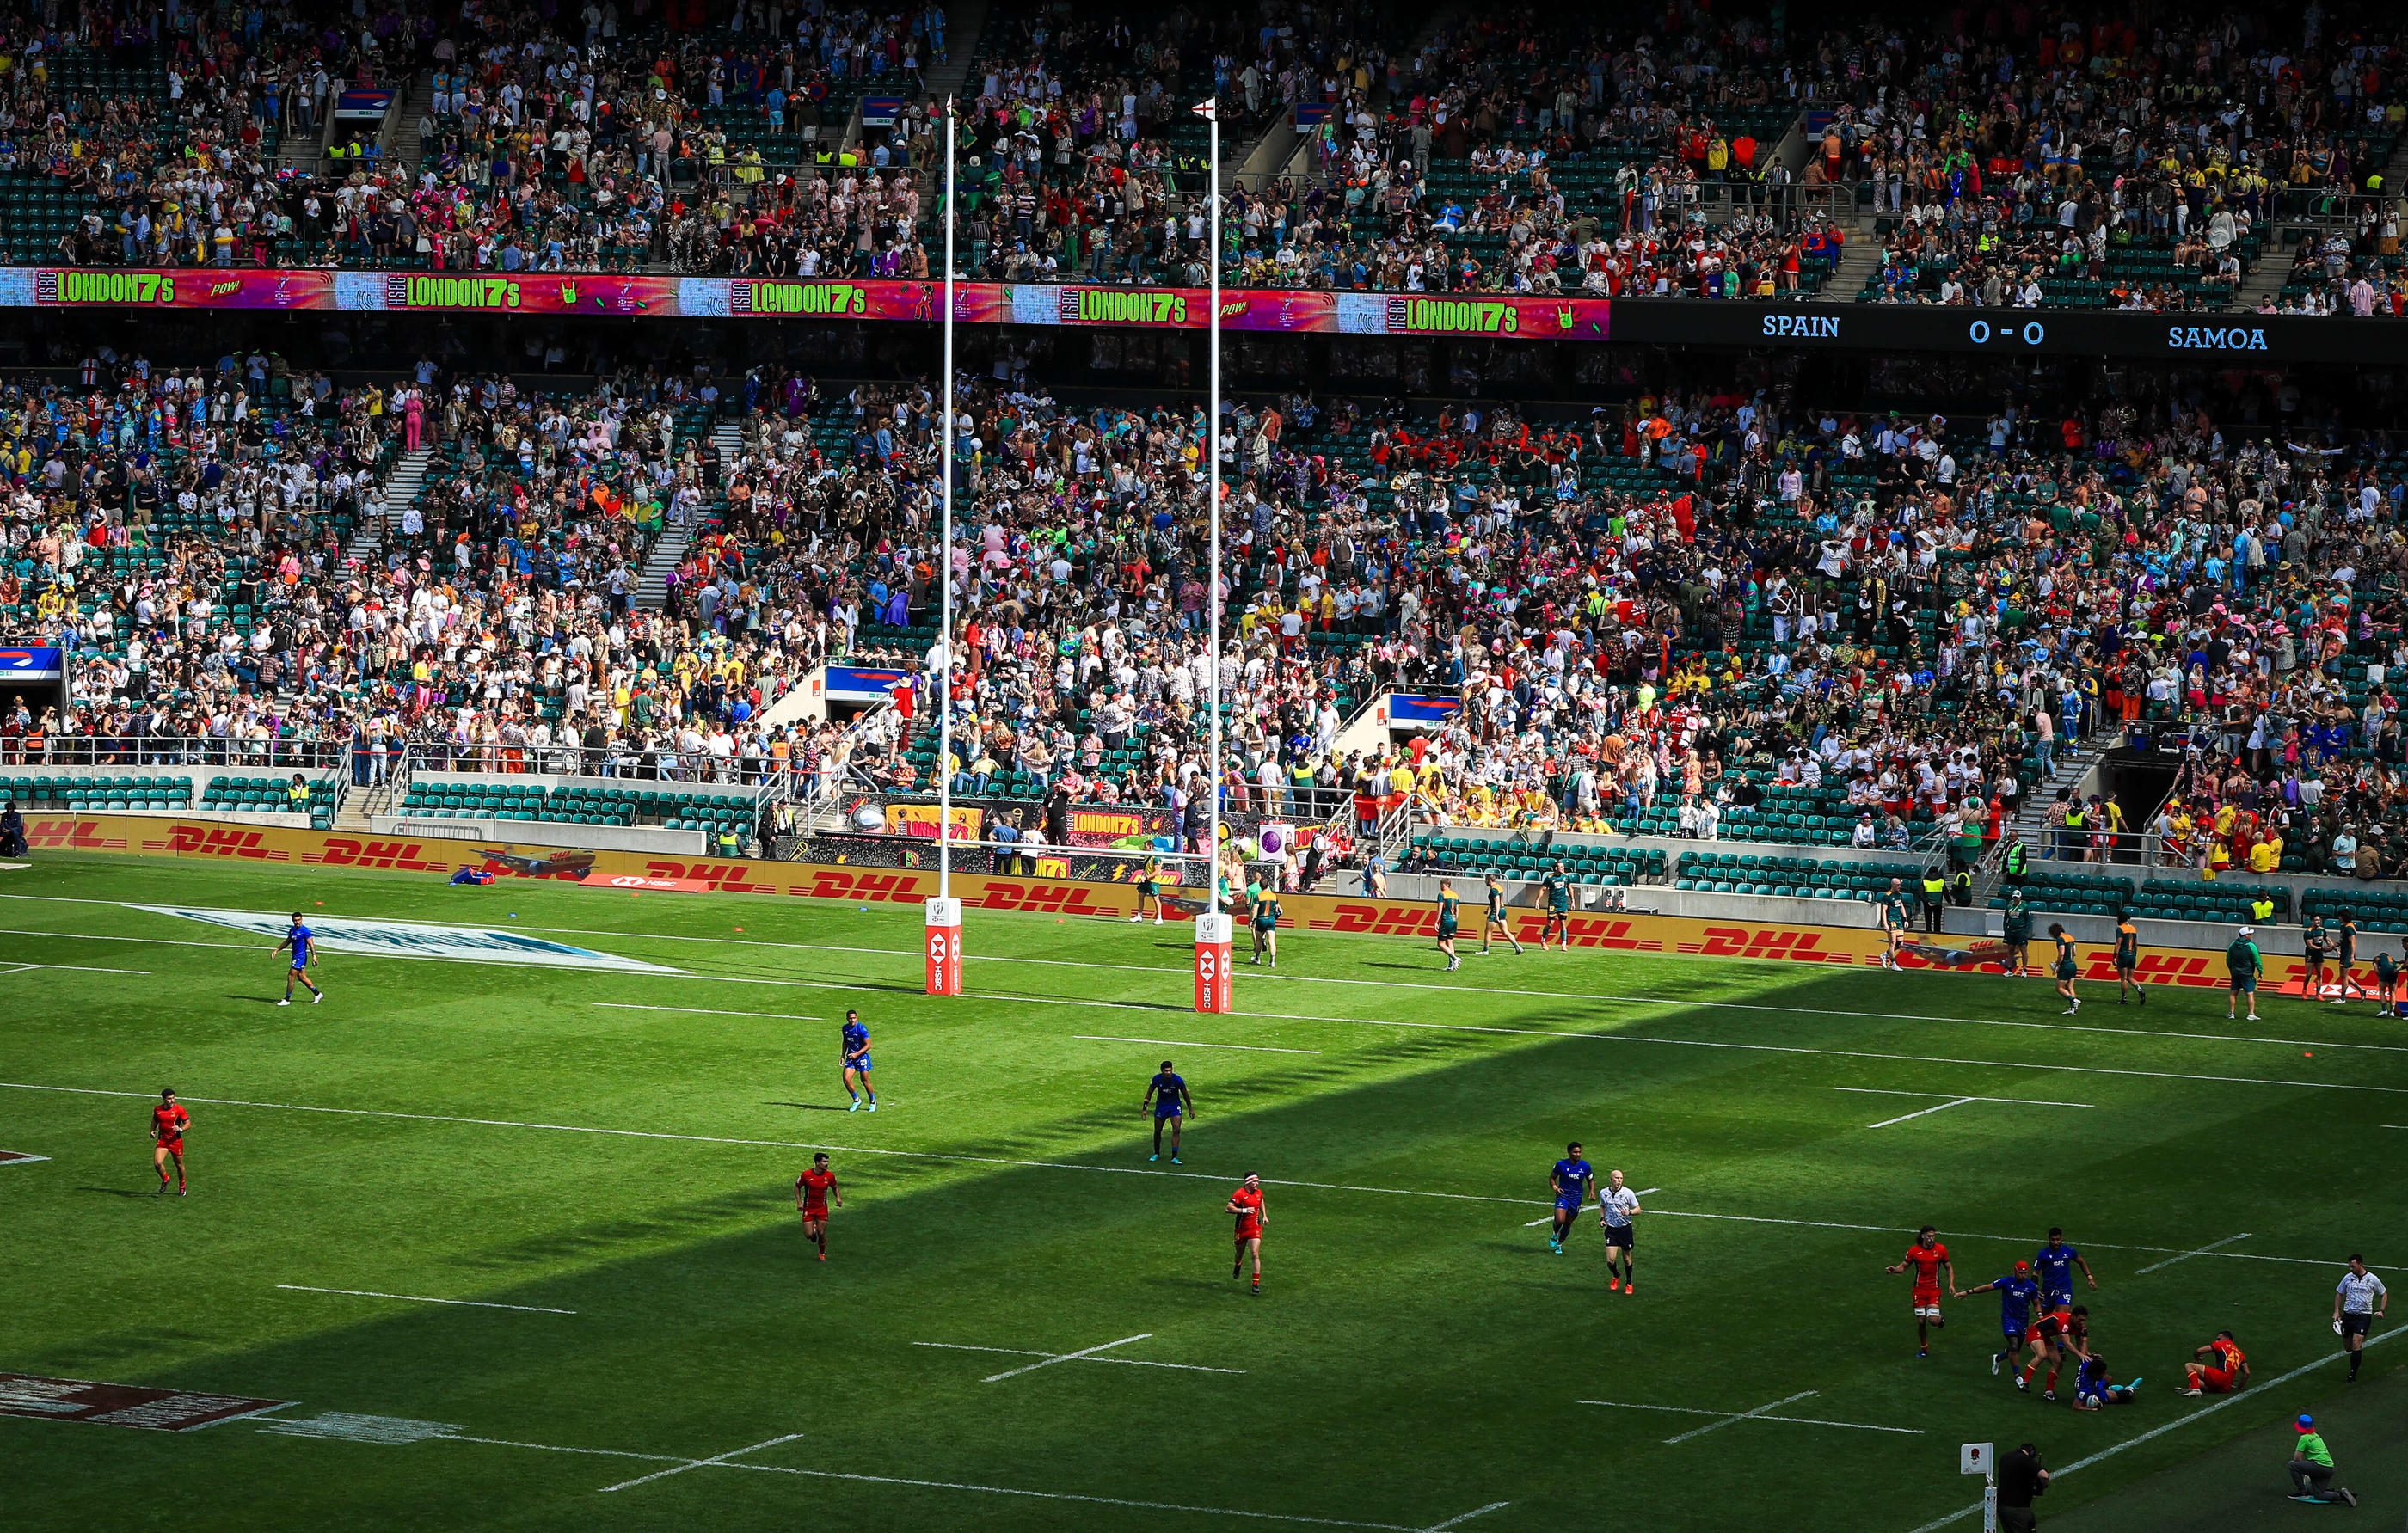 Même terrain (ici à Twickenham à Londres) mais moins de joueurs et des matchs plus courts et intenses. Le rugby à VII se distingue du rugby à XV. Icon Sport/PA Images